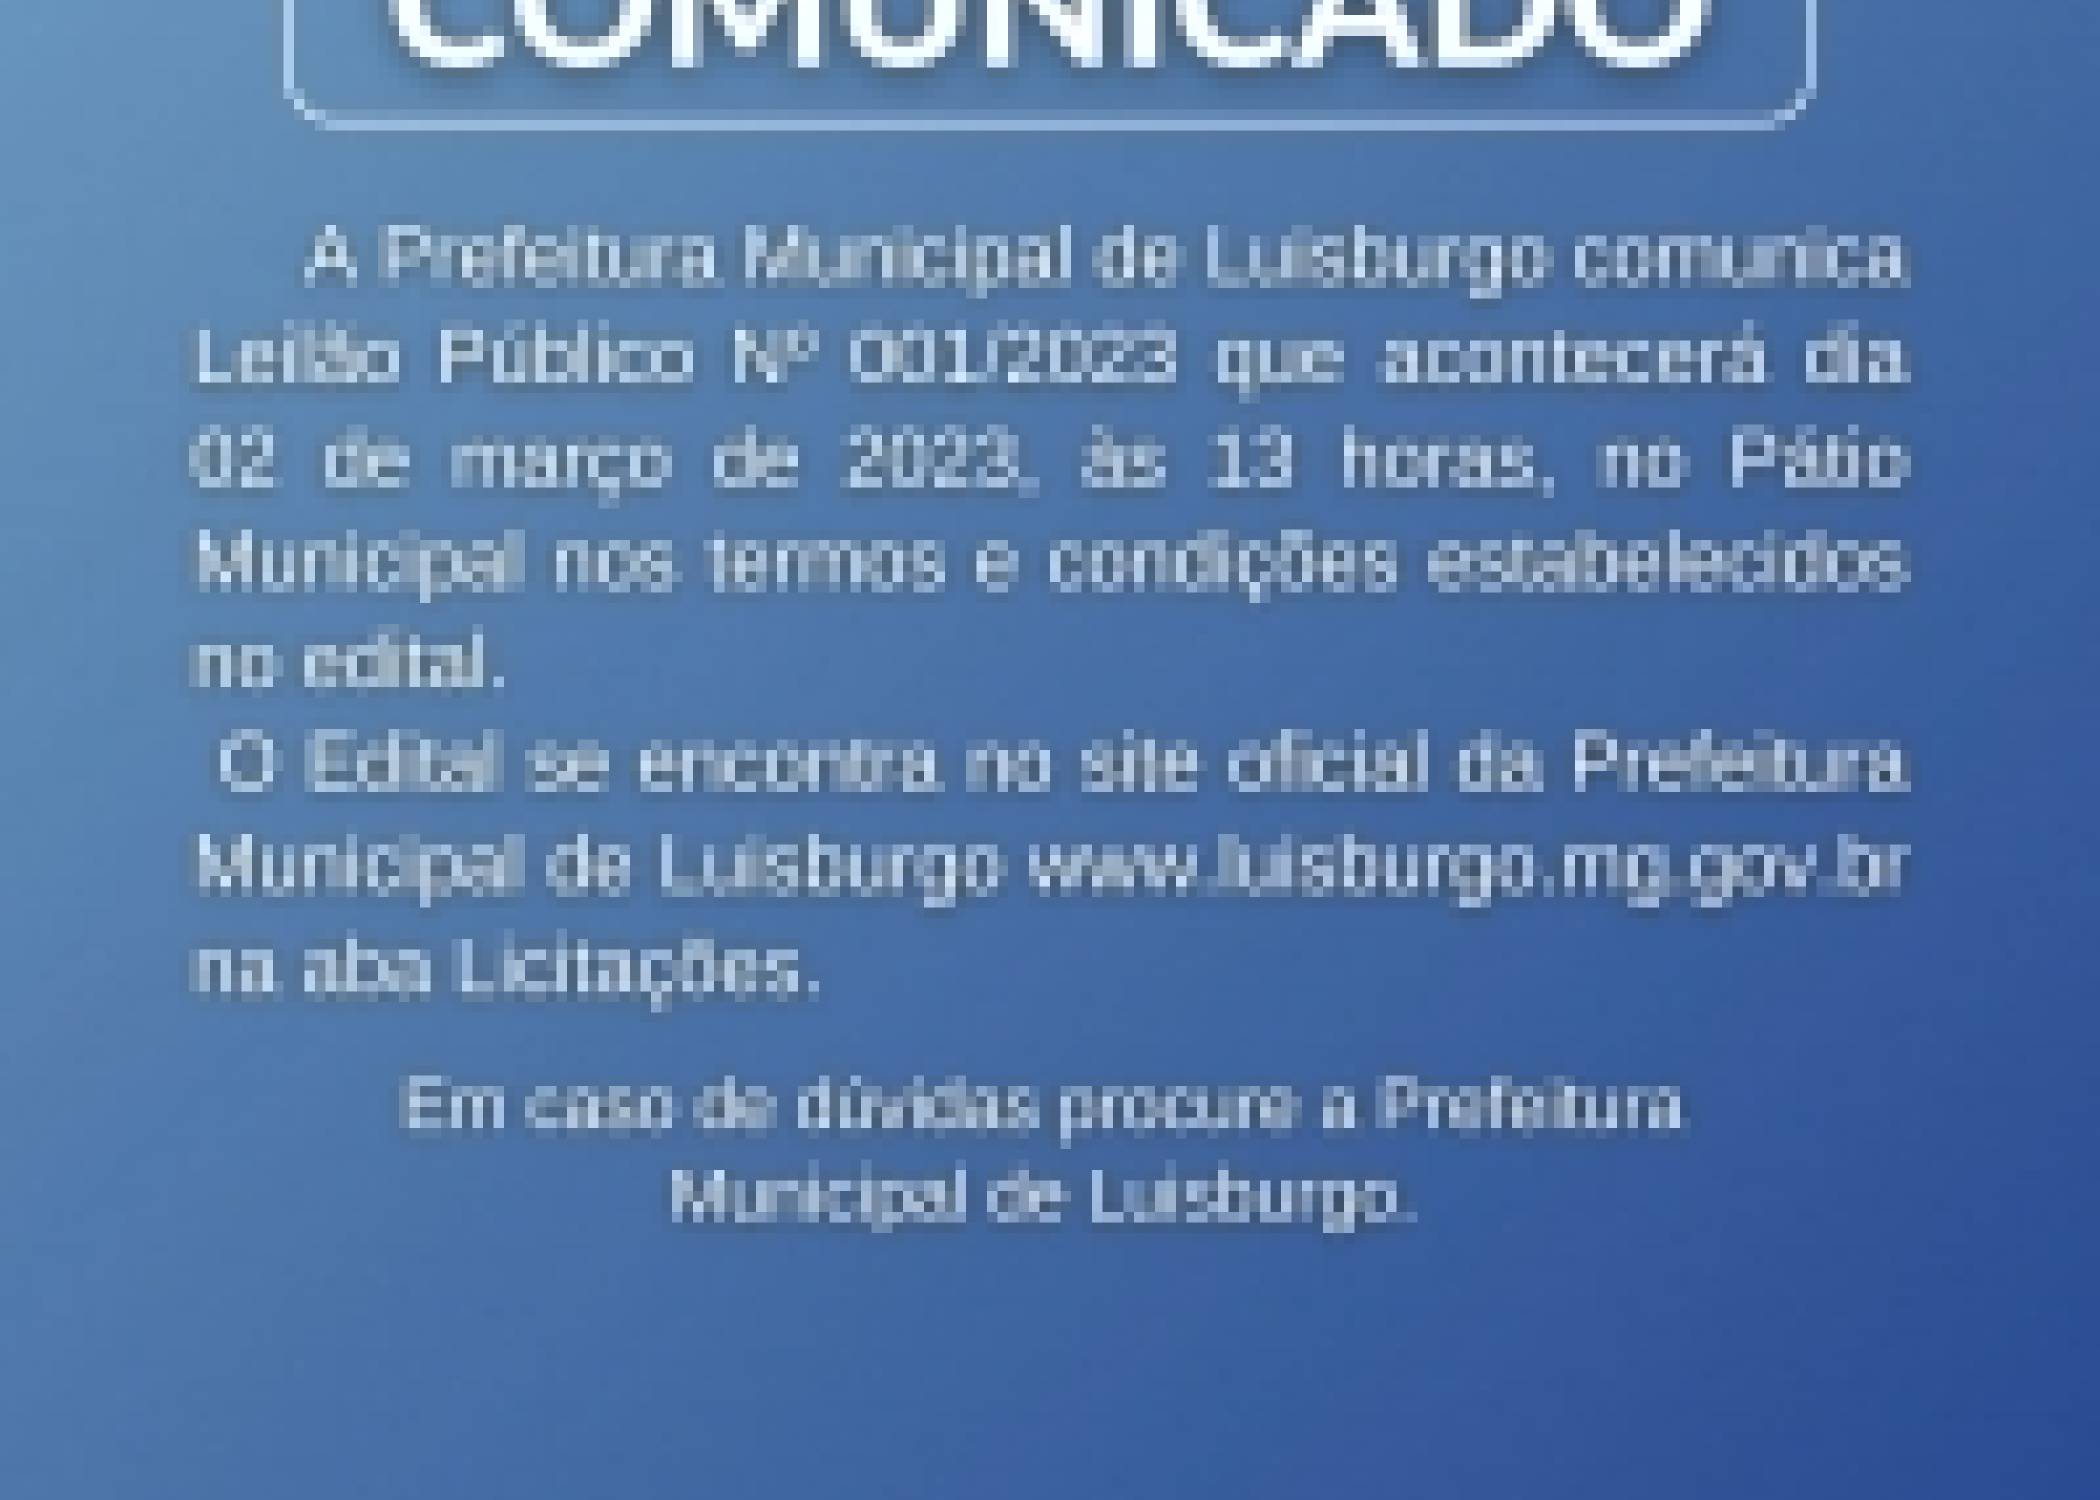 Prefeitura Municipal De Luisburgo Comunica Leilão Público Nº 001/2023